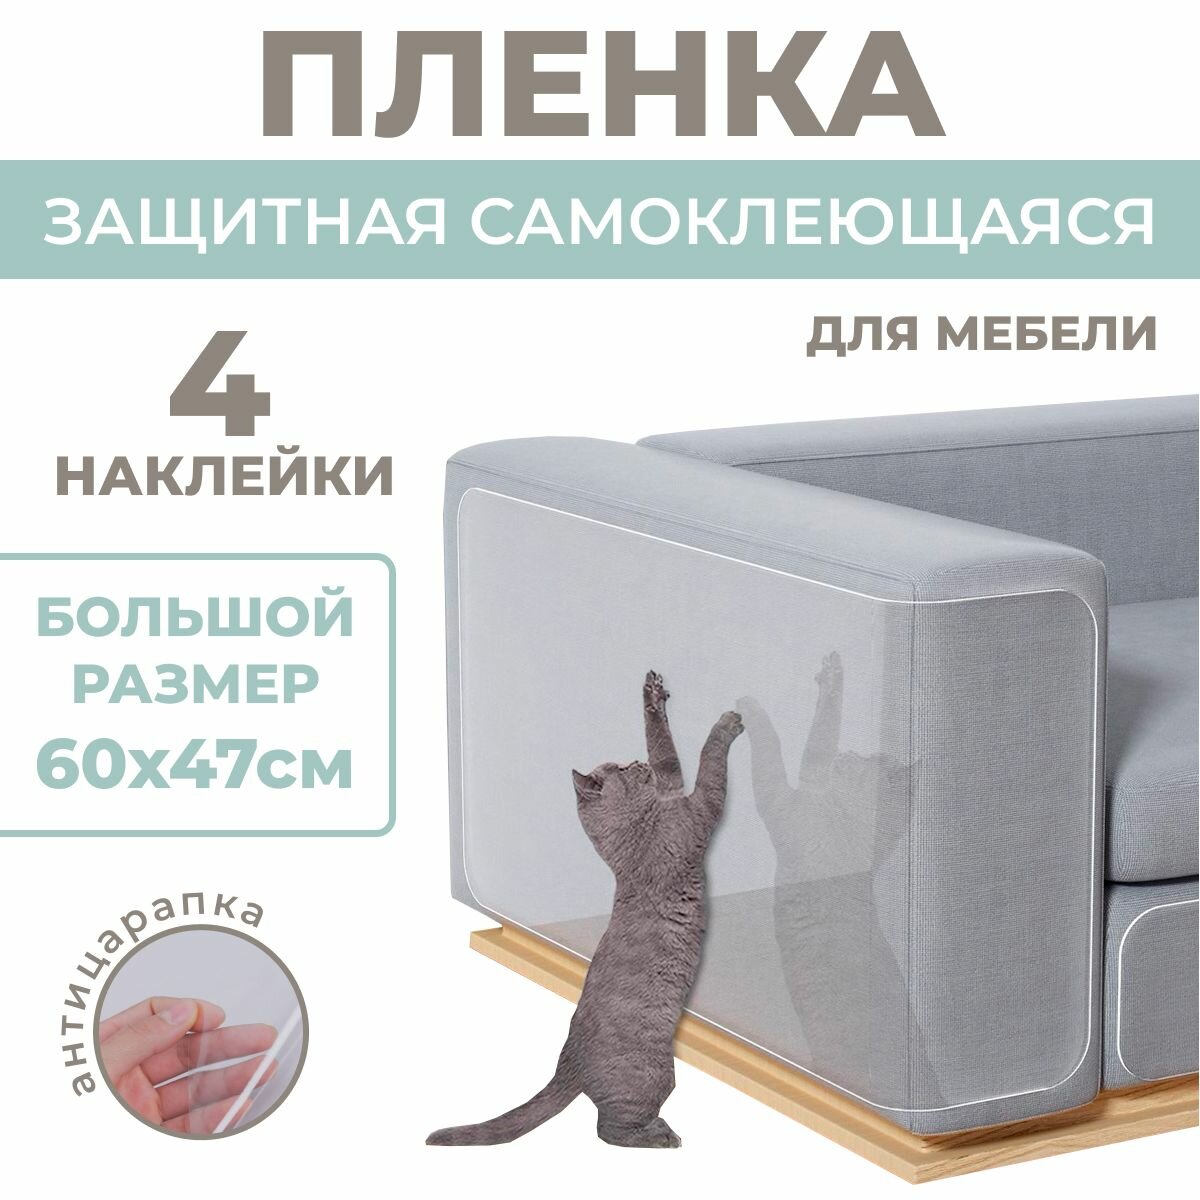 (60х47см, 4 листа) Пленка защитная для мебели от когтей кошек и котов 60 см / Фартук для кухни самоклеящийся, защитный экран для плиты